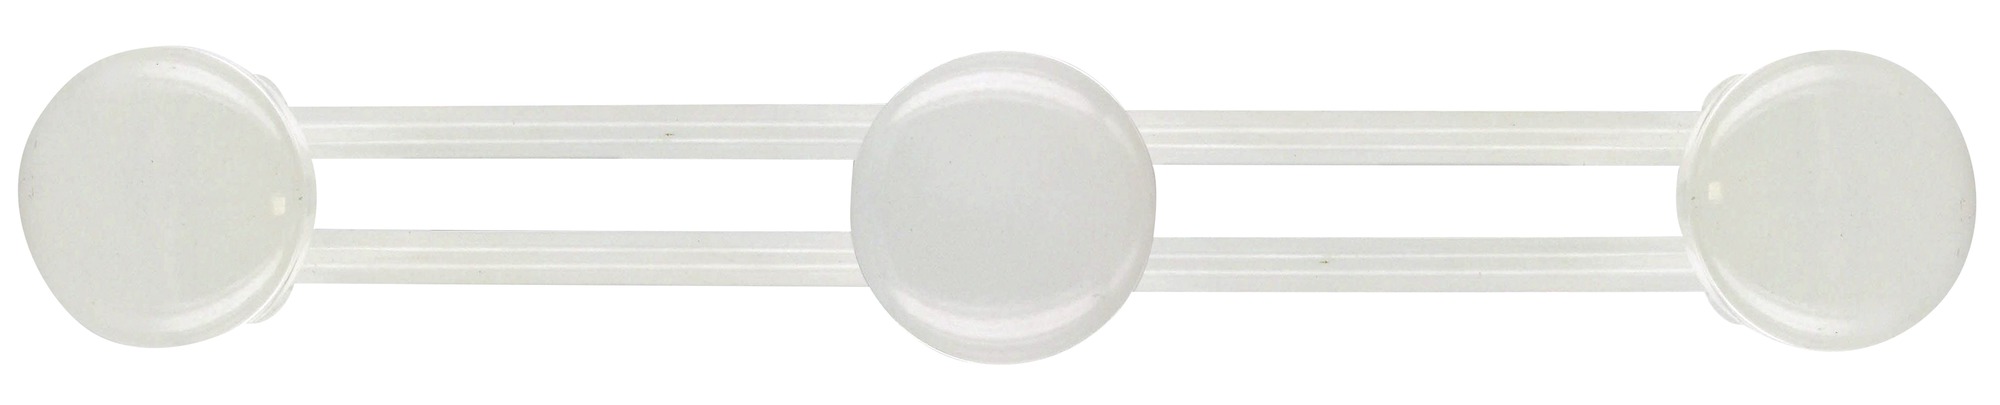 Portemanteau métallique - Cime  - Laqué blanc - 3 têtes - L. 46,5 cm